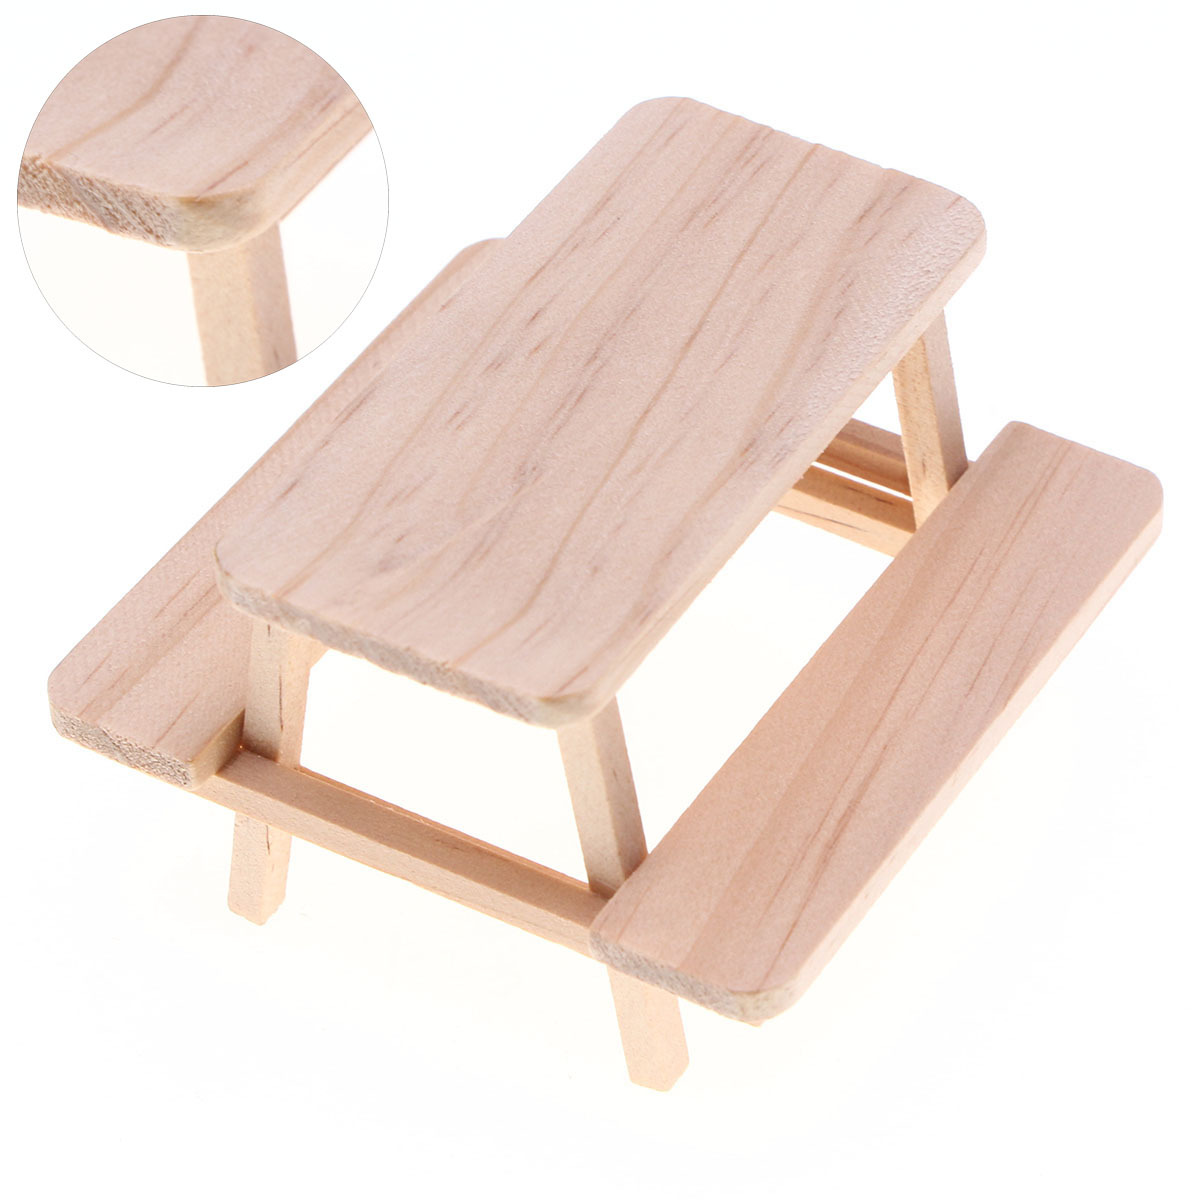 模型  撮影道具  ミニチュア  モデル  インテリア置物   デコレーション  木製  つなぎのテーブル+いす